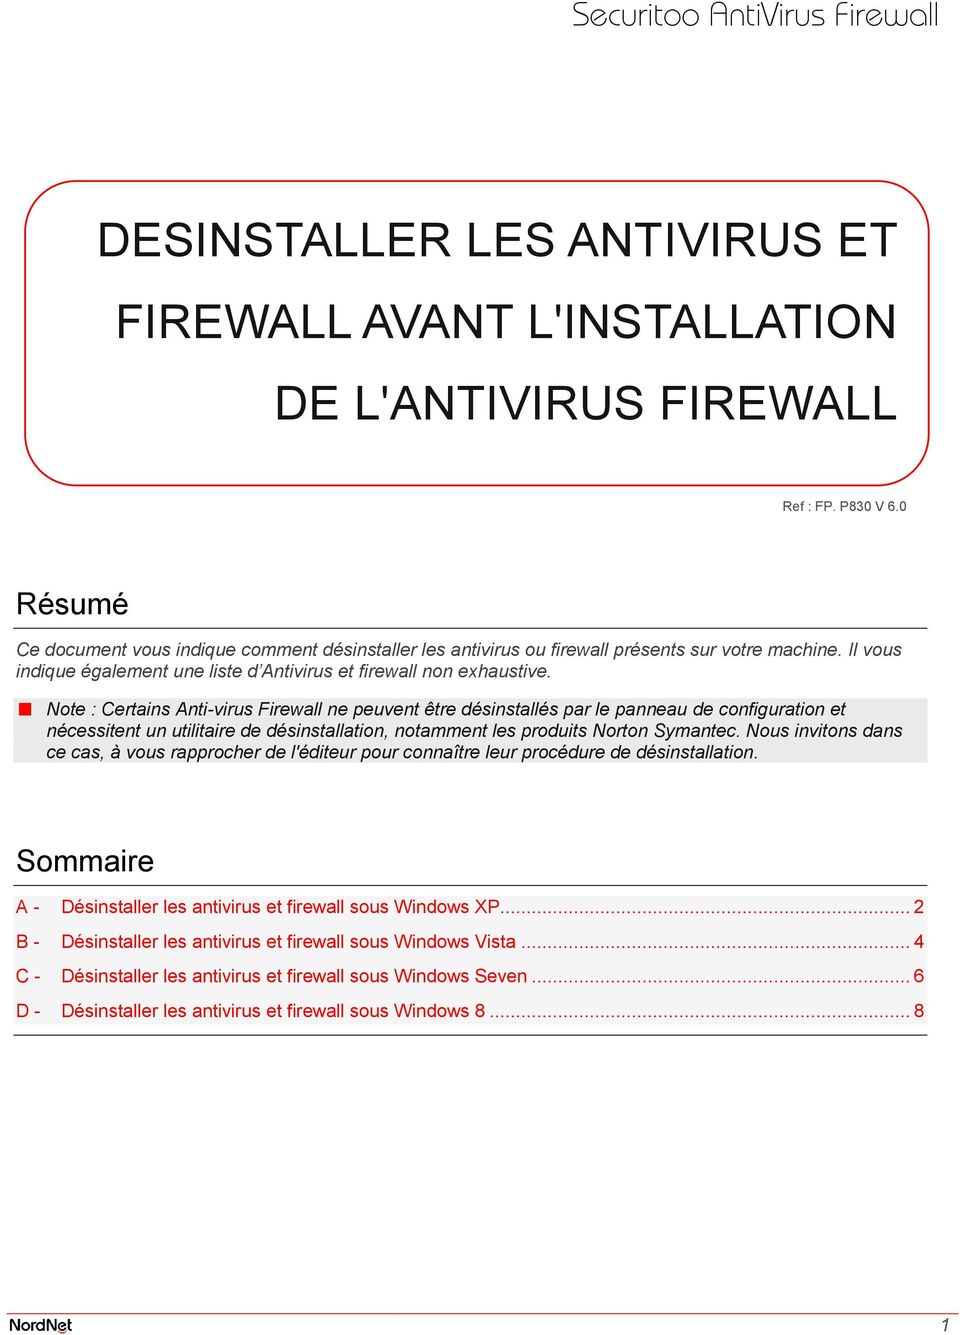 Note : Certains Anti-virus Firewall ne peuvent être désinstallés par le panneau de configuration et nécessitent un utilitaire de désinstallation, notamment les produits Norton Symantec.